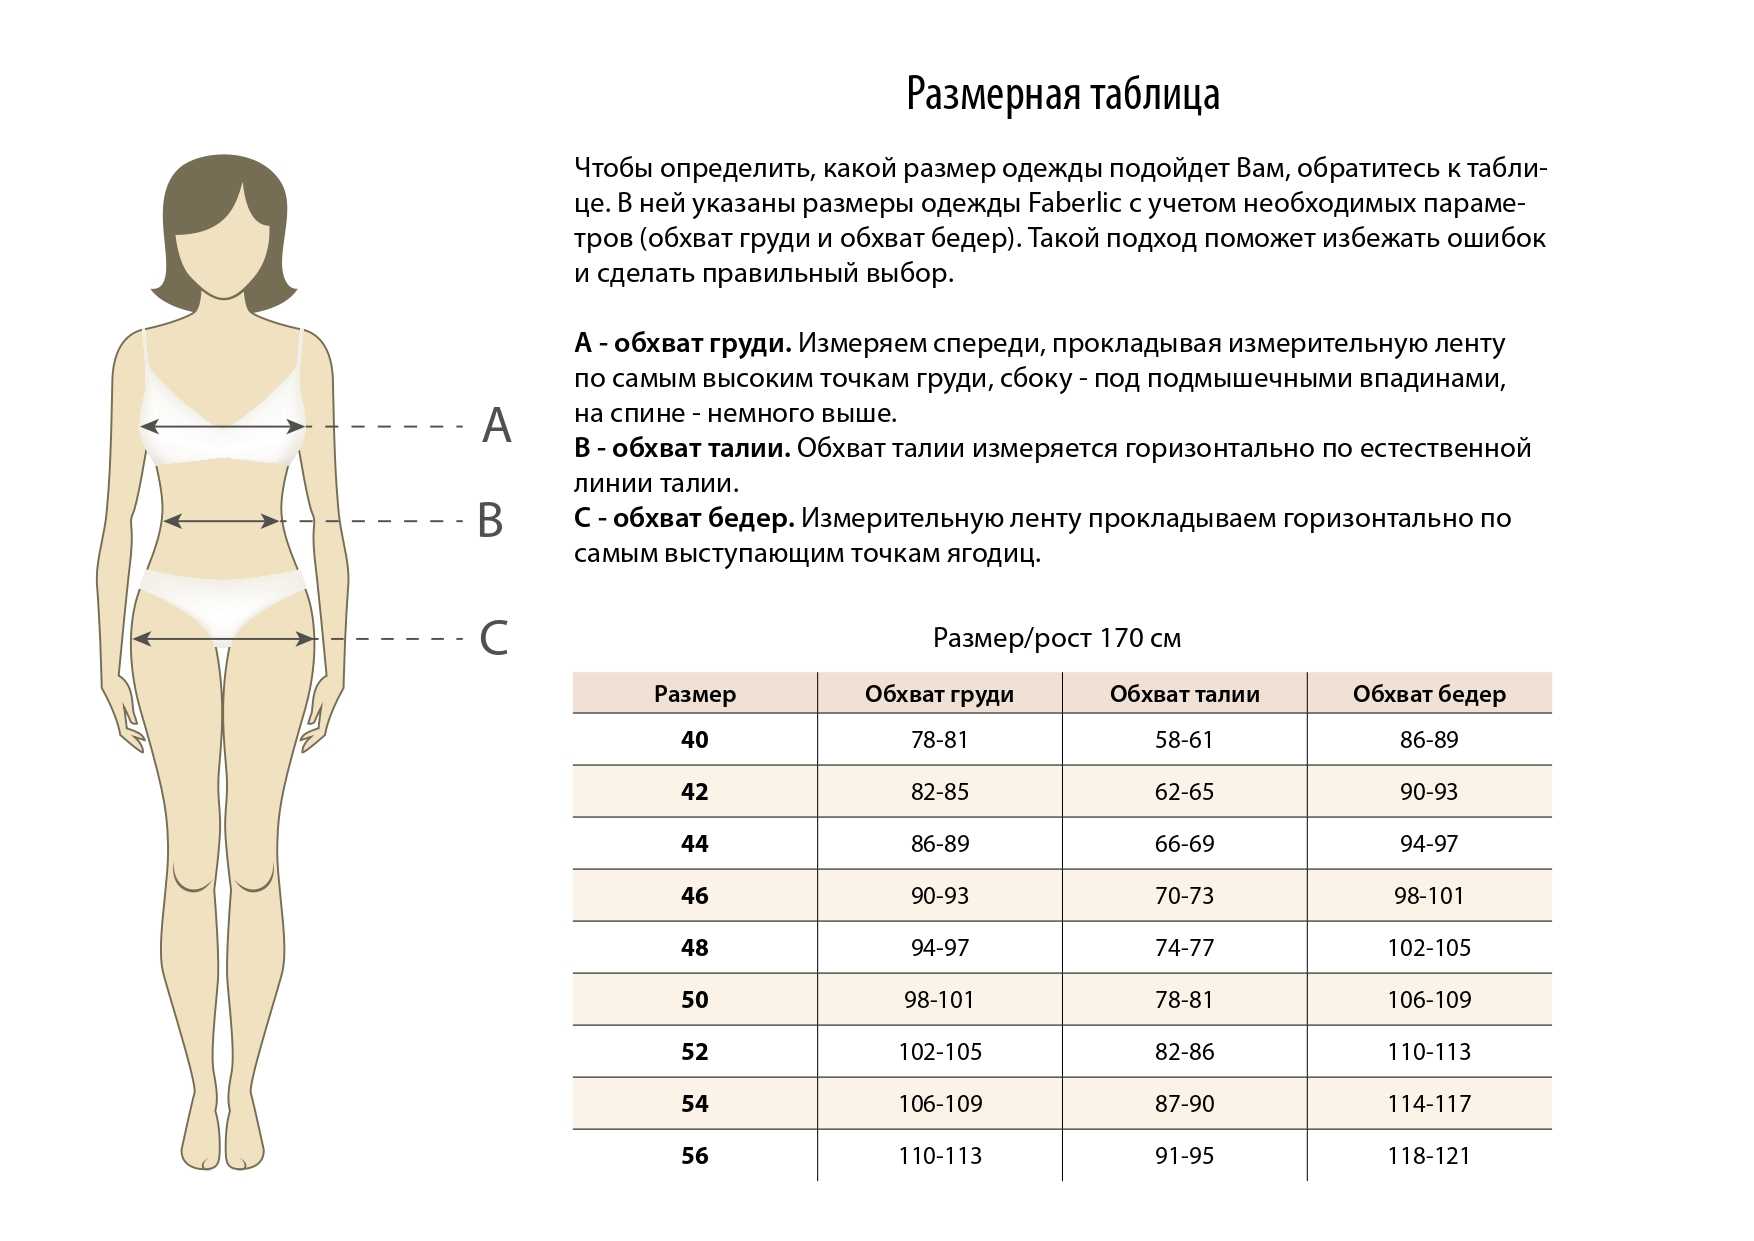 Размерные таблицы мужской и женской одежды на основе гостов